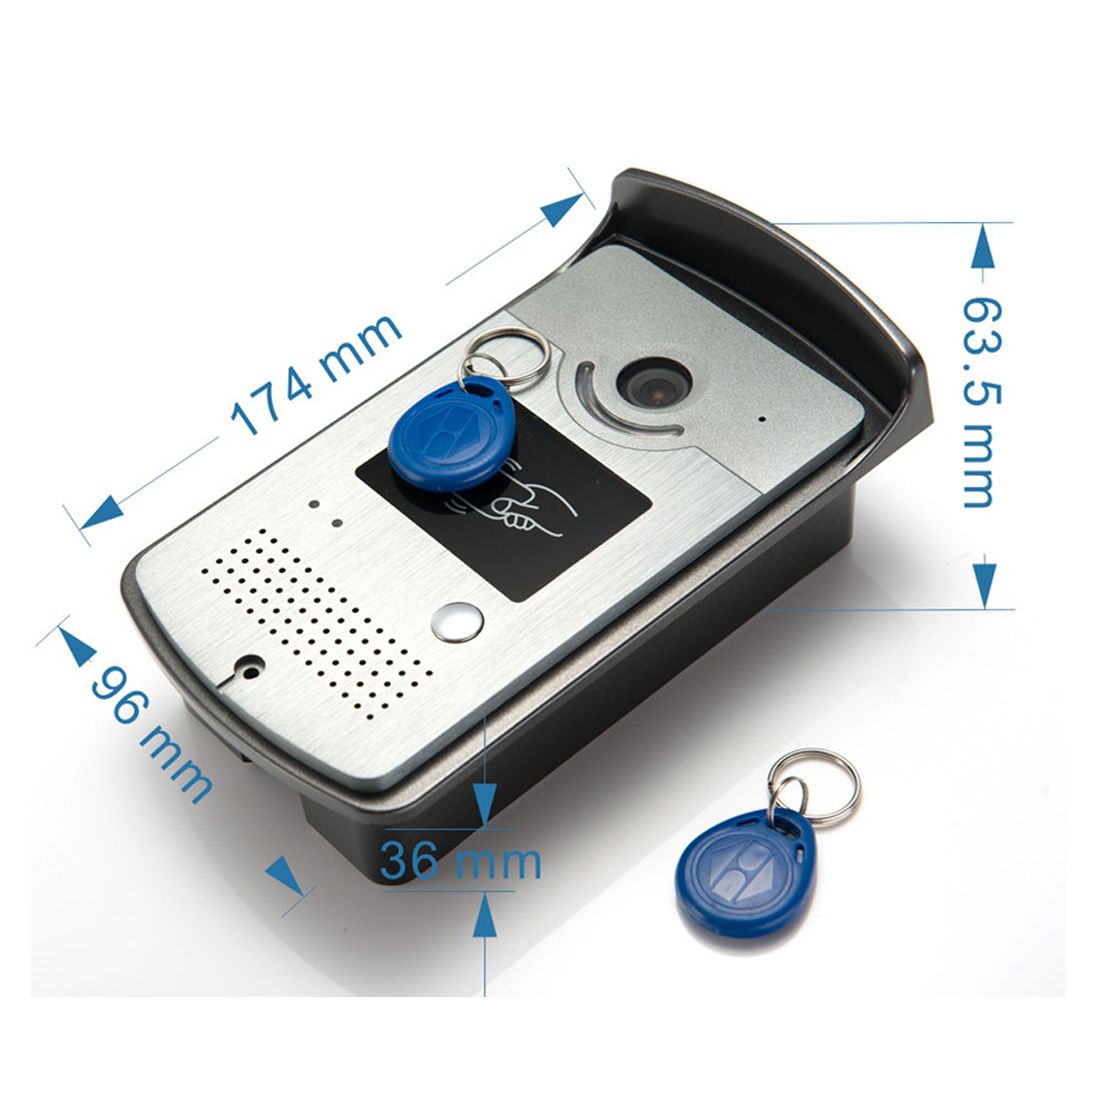 Ennio-701MEID14-Tuya-APP-Remote-Unlock-Visual-Intercom-7-Inch-1080P-Monitor-Wifi-Video-Doorbell-Door-1759325